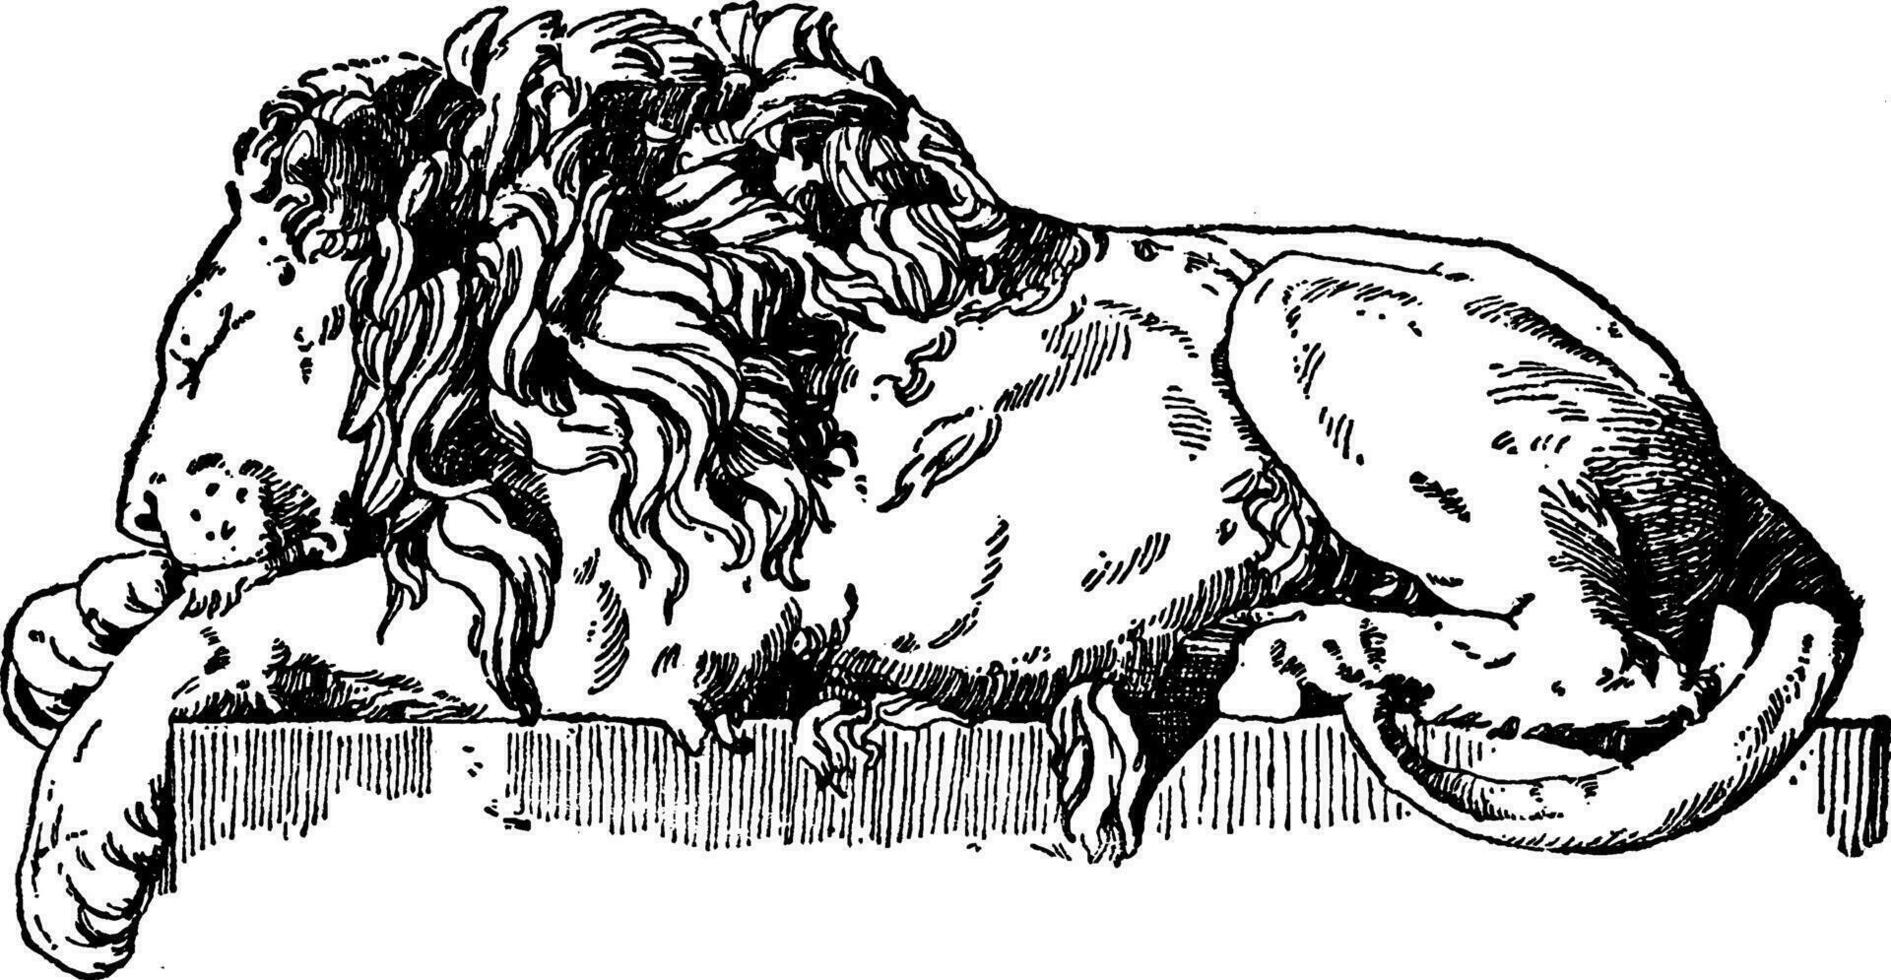 slapen leeuw is een monument naar paus clementie xiii is gevonden in st. peter's, wijnoogst gravure. vector